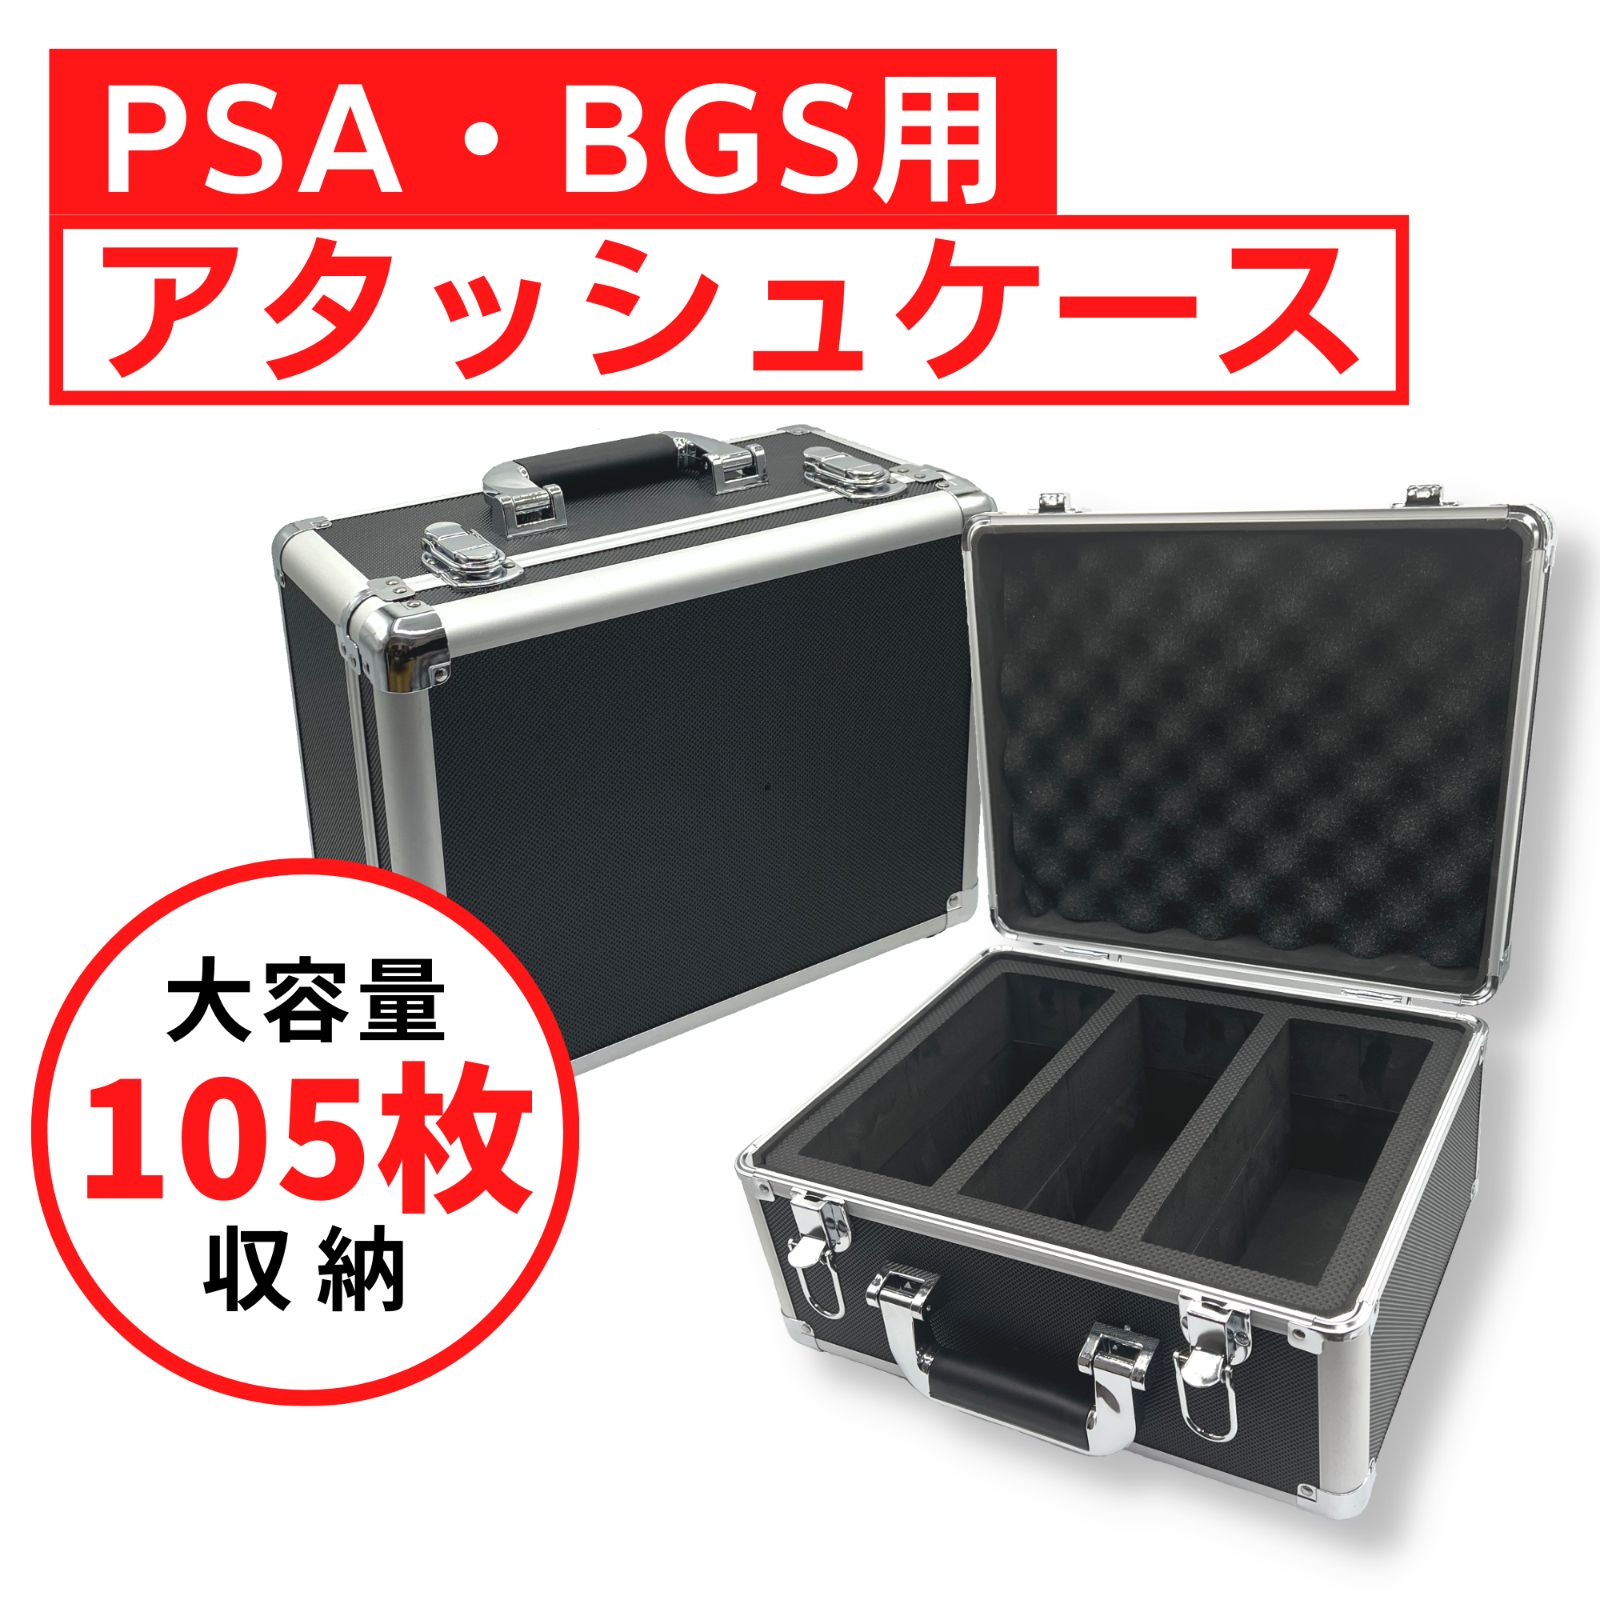 PSA BGS 保管用 アタッシュケース 105枚収納 ポケモンカード 遊戯王